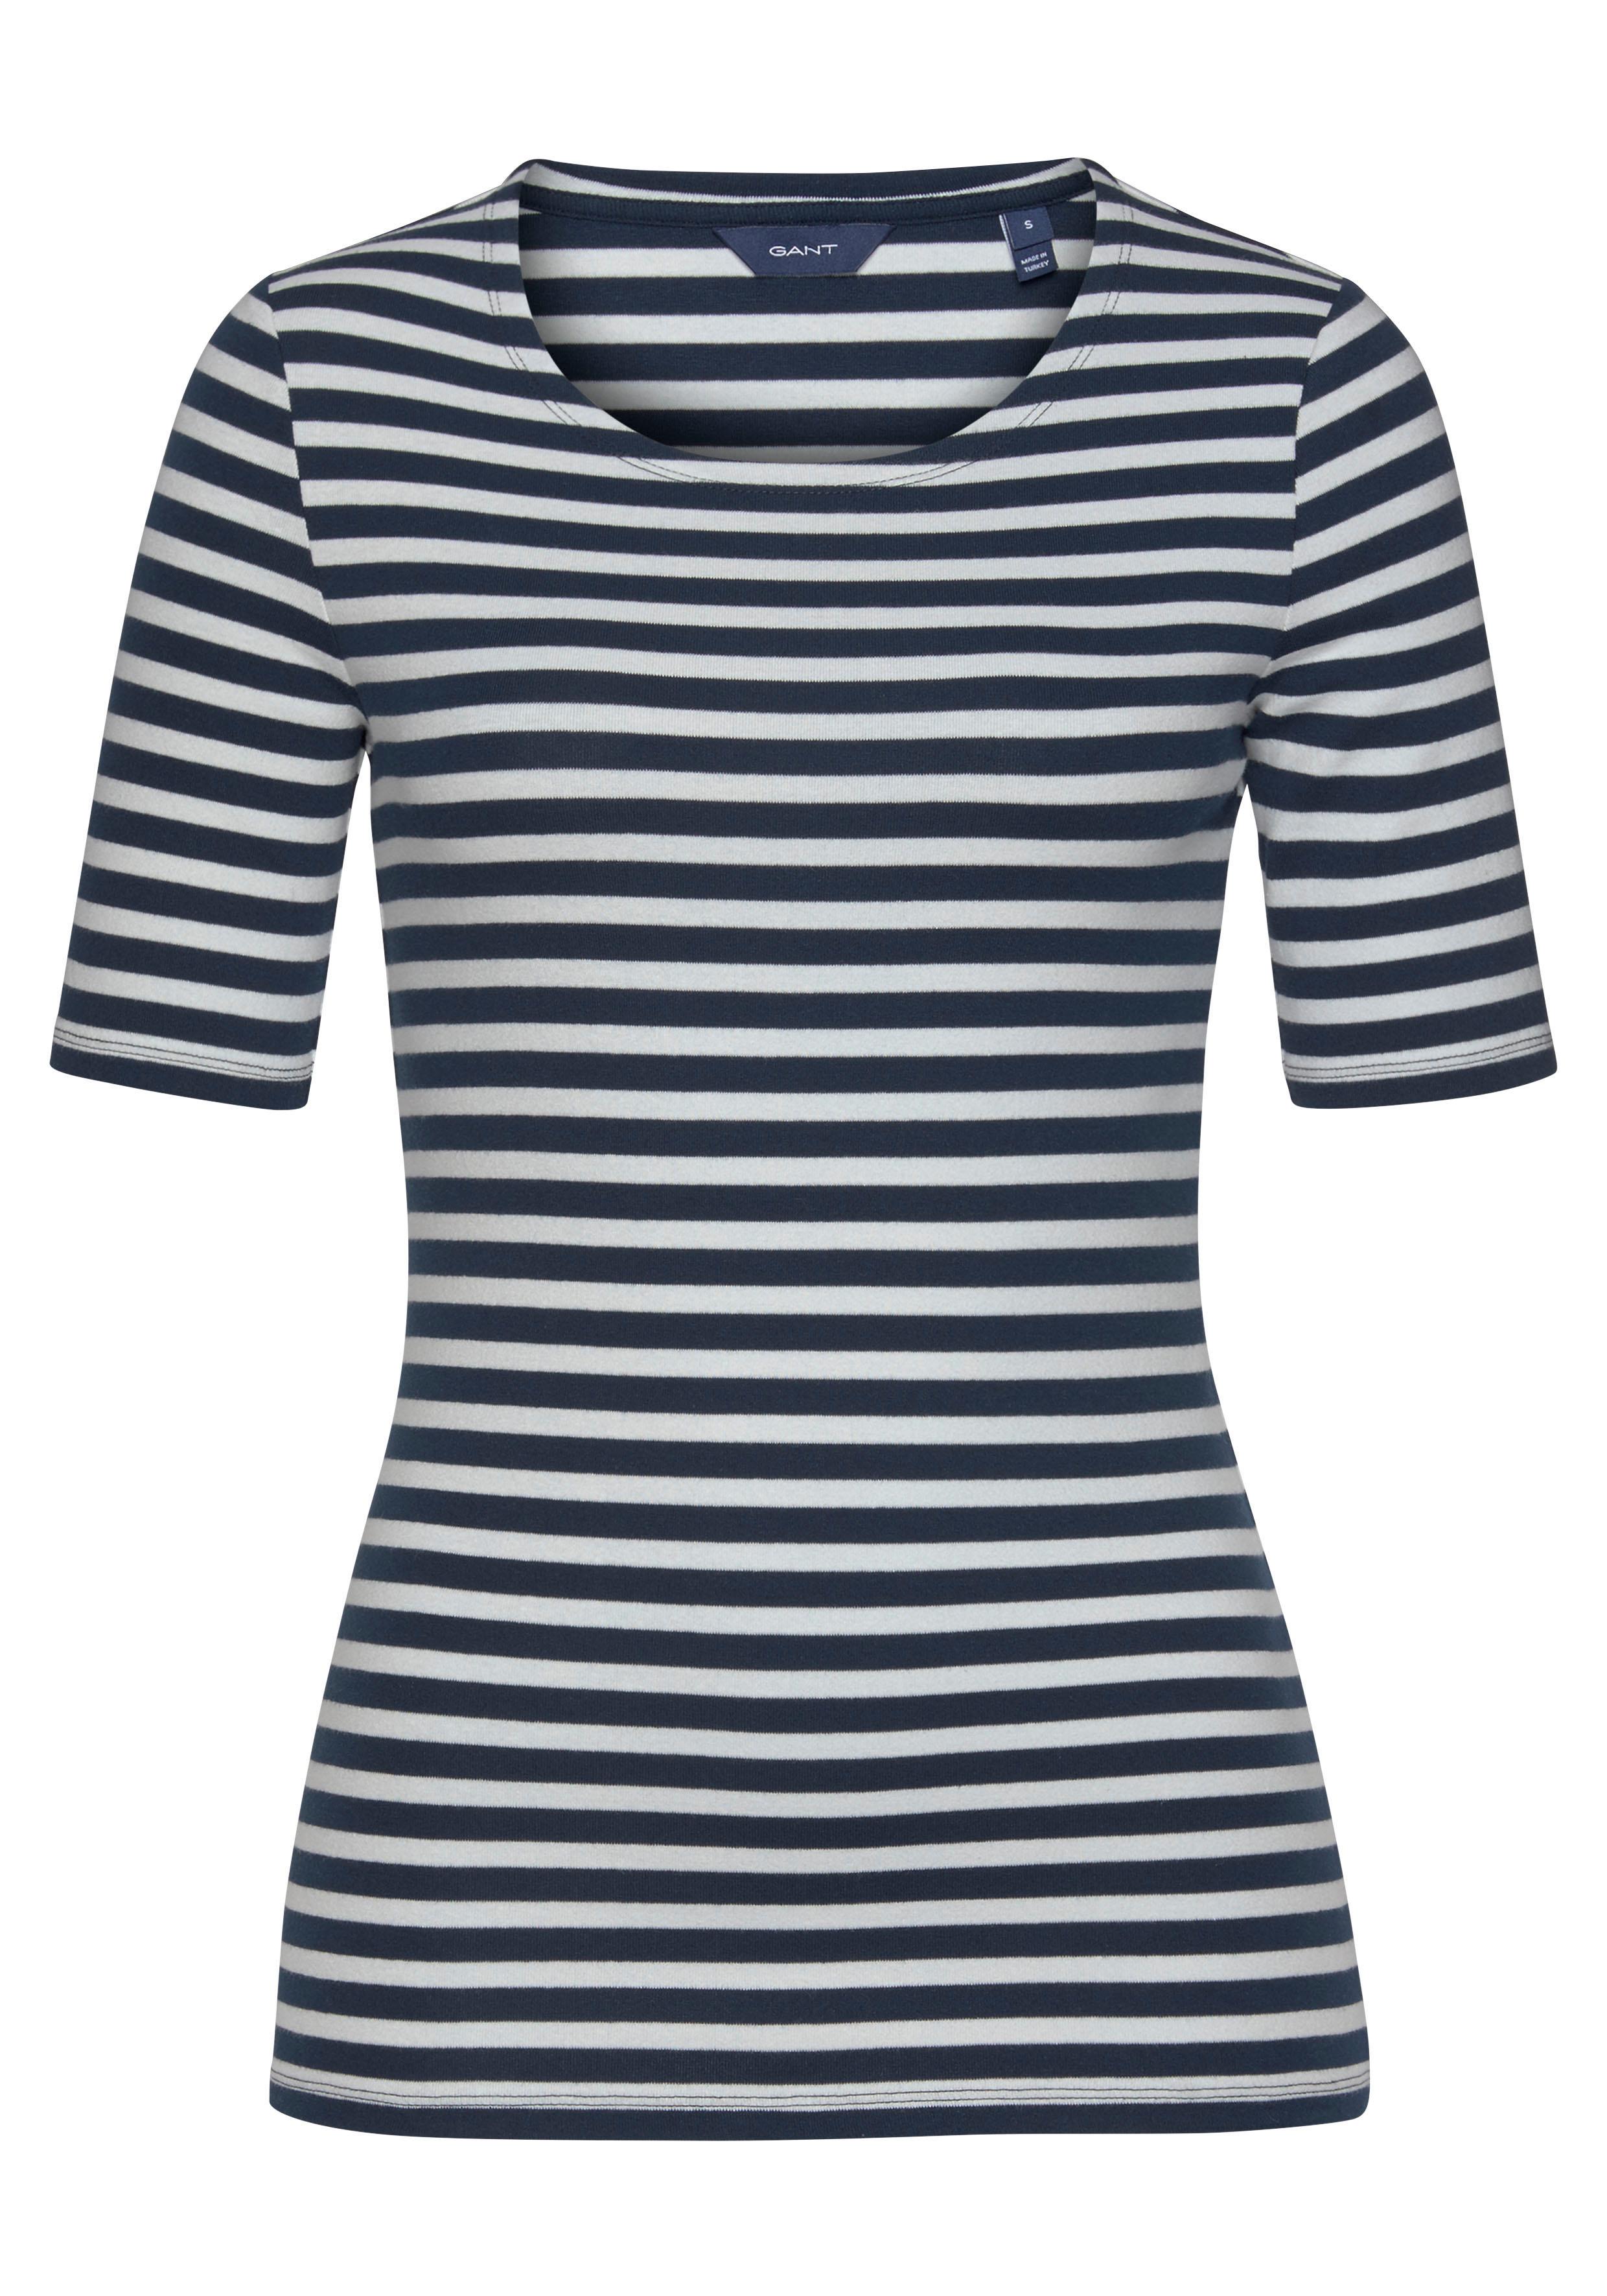 Gant T-Shirt 4203432 Damen T-Shirt Rundhals gestreift 1x1 Rib Stripe günstig online kaufen